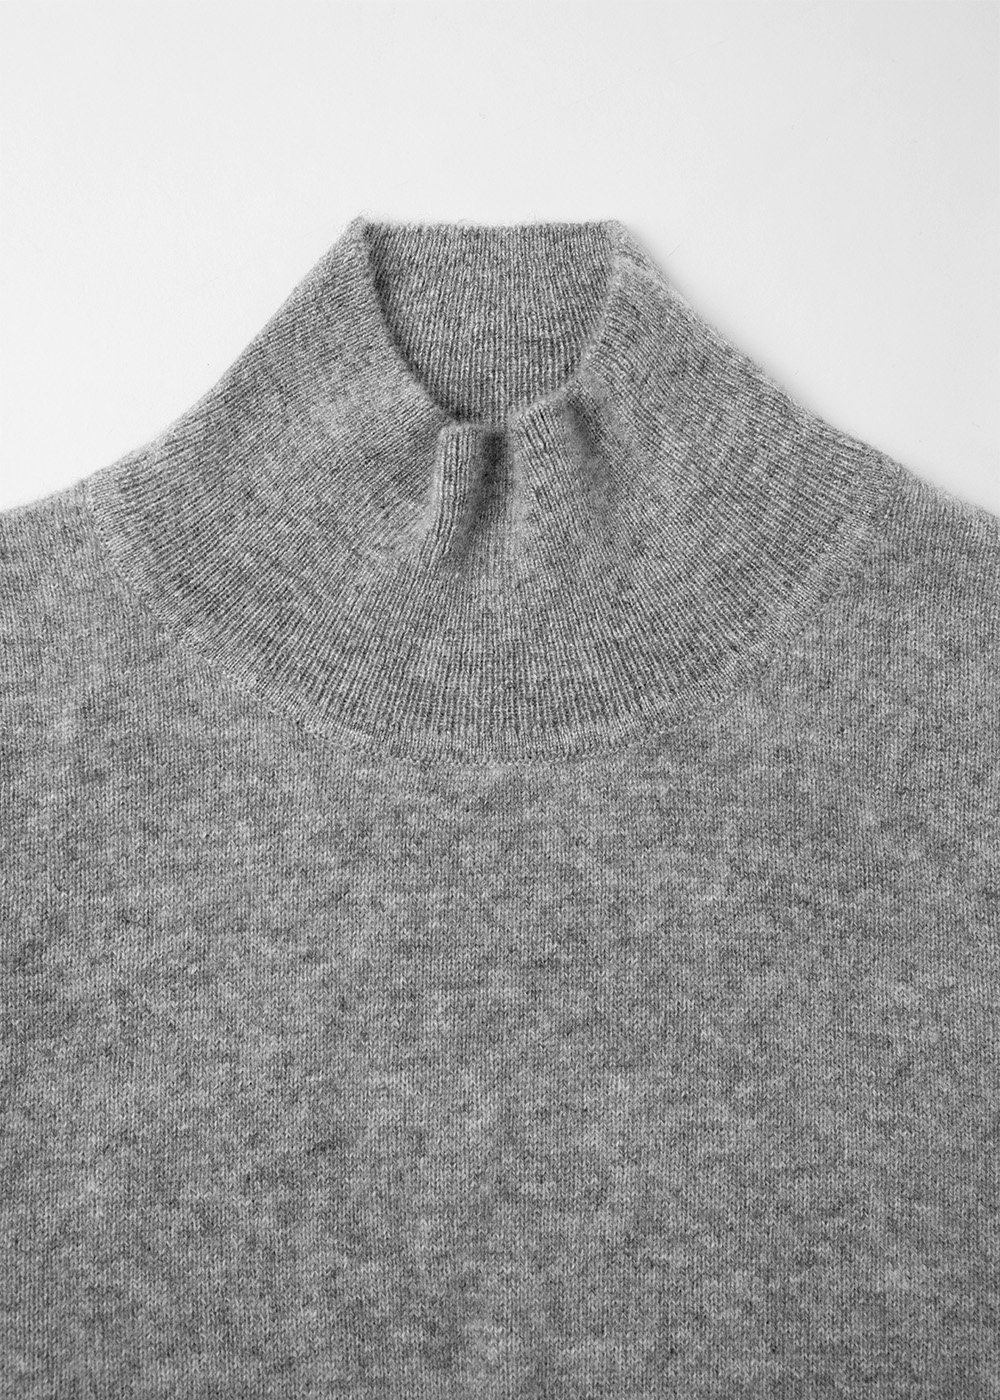 Cashmere 100% Mockneck Knit _ gray